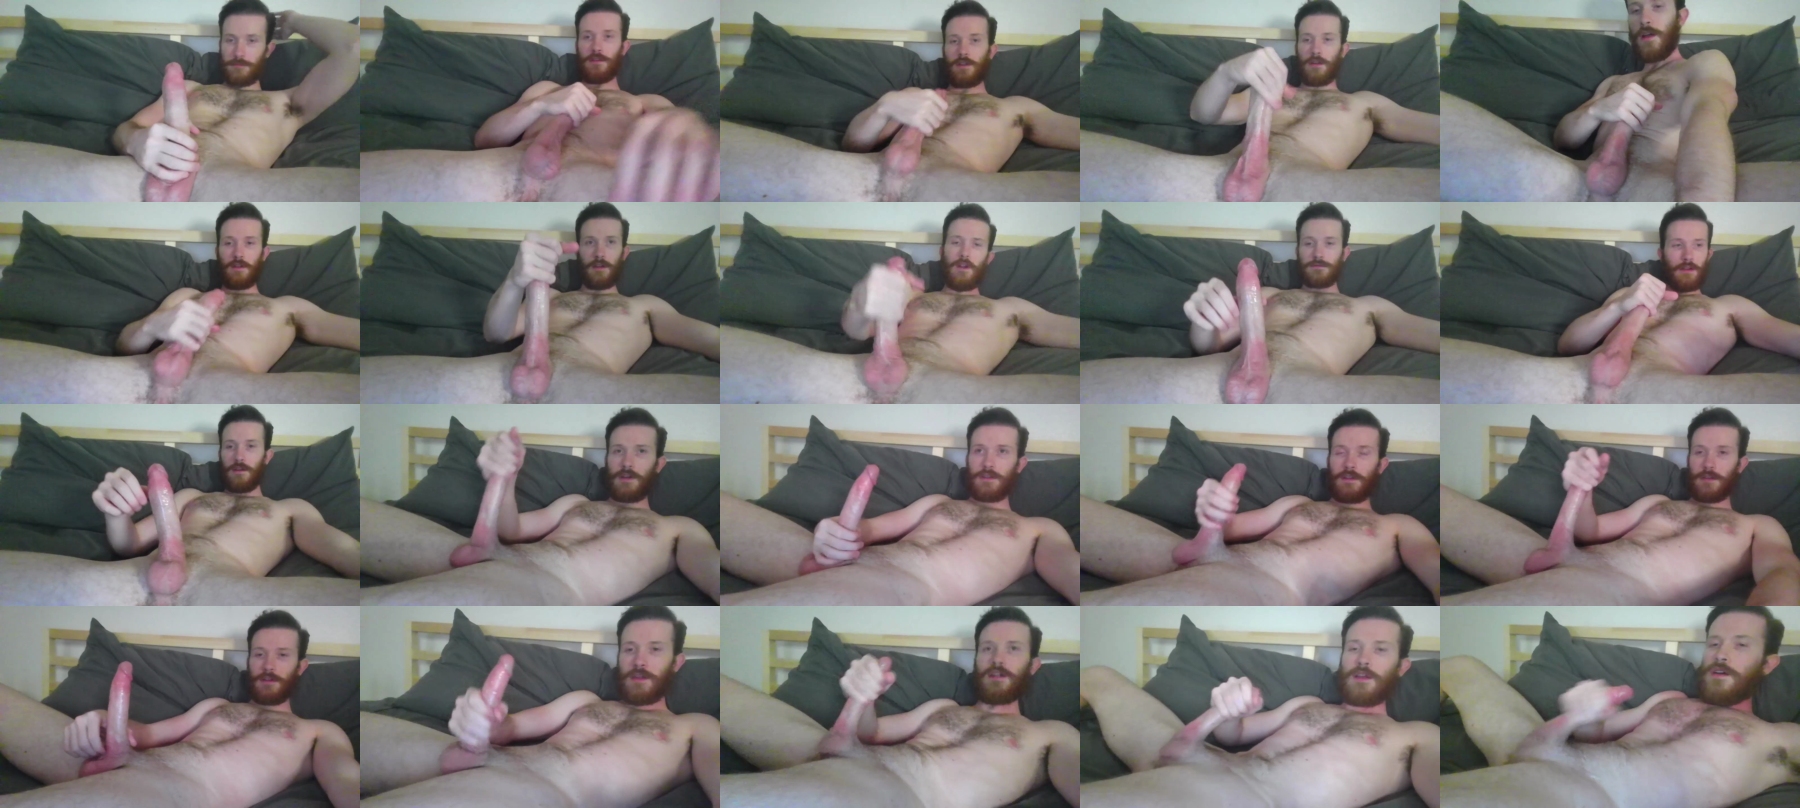 Jason_Pourne  08-07-2021 Male Nude